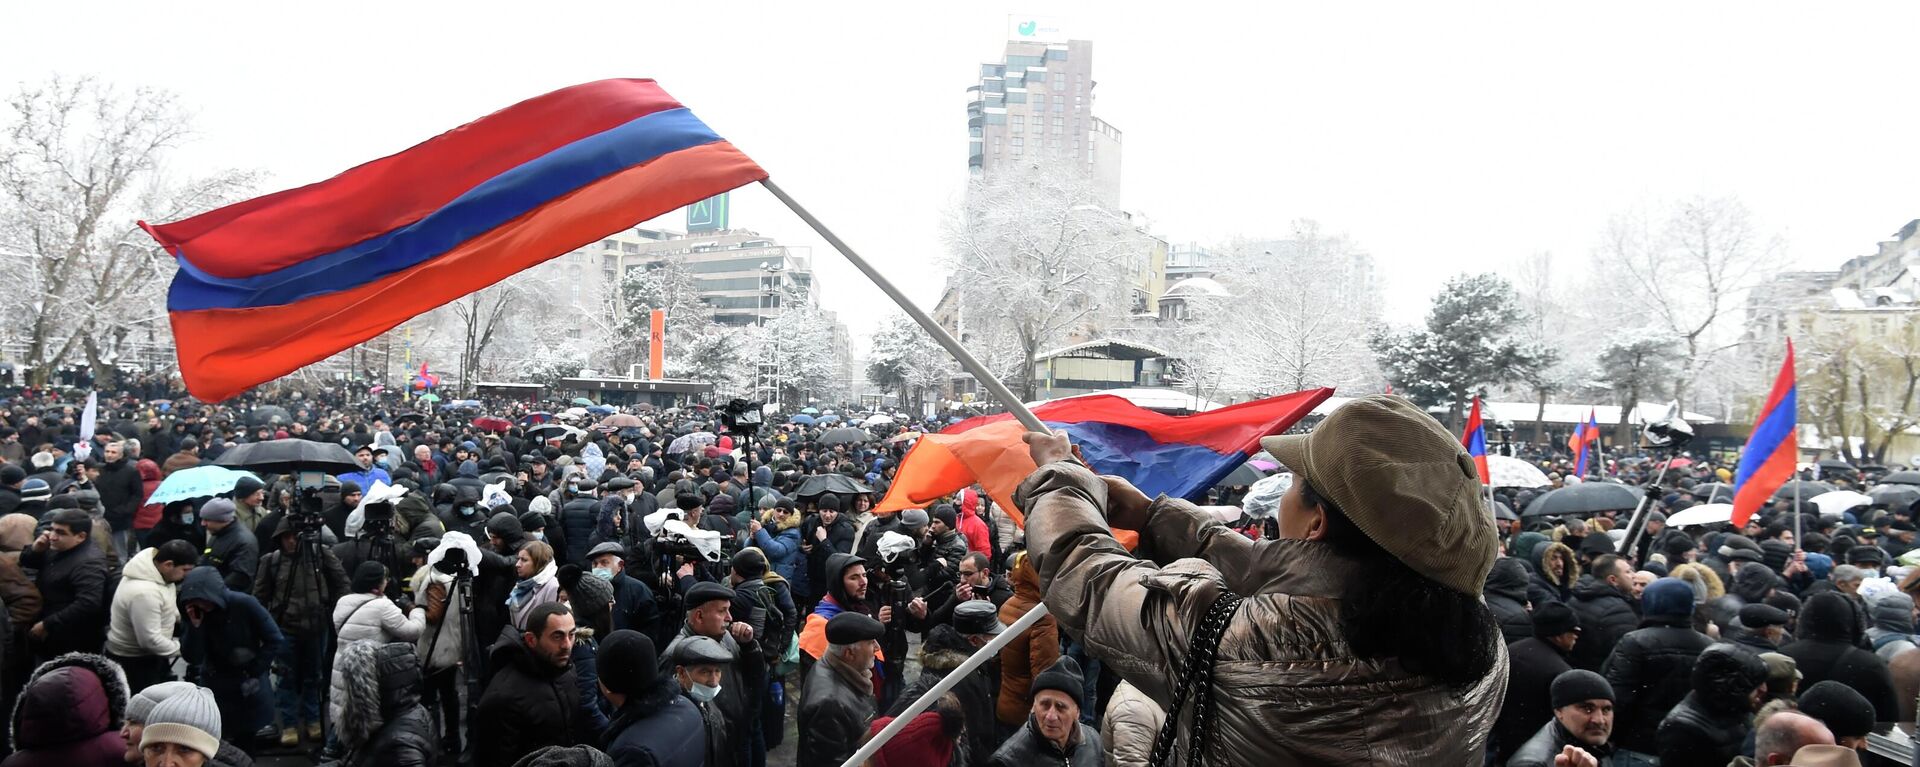 Manifestaciones en Armenia - Sputnik Mundo, 1920, 23.02.2021